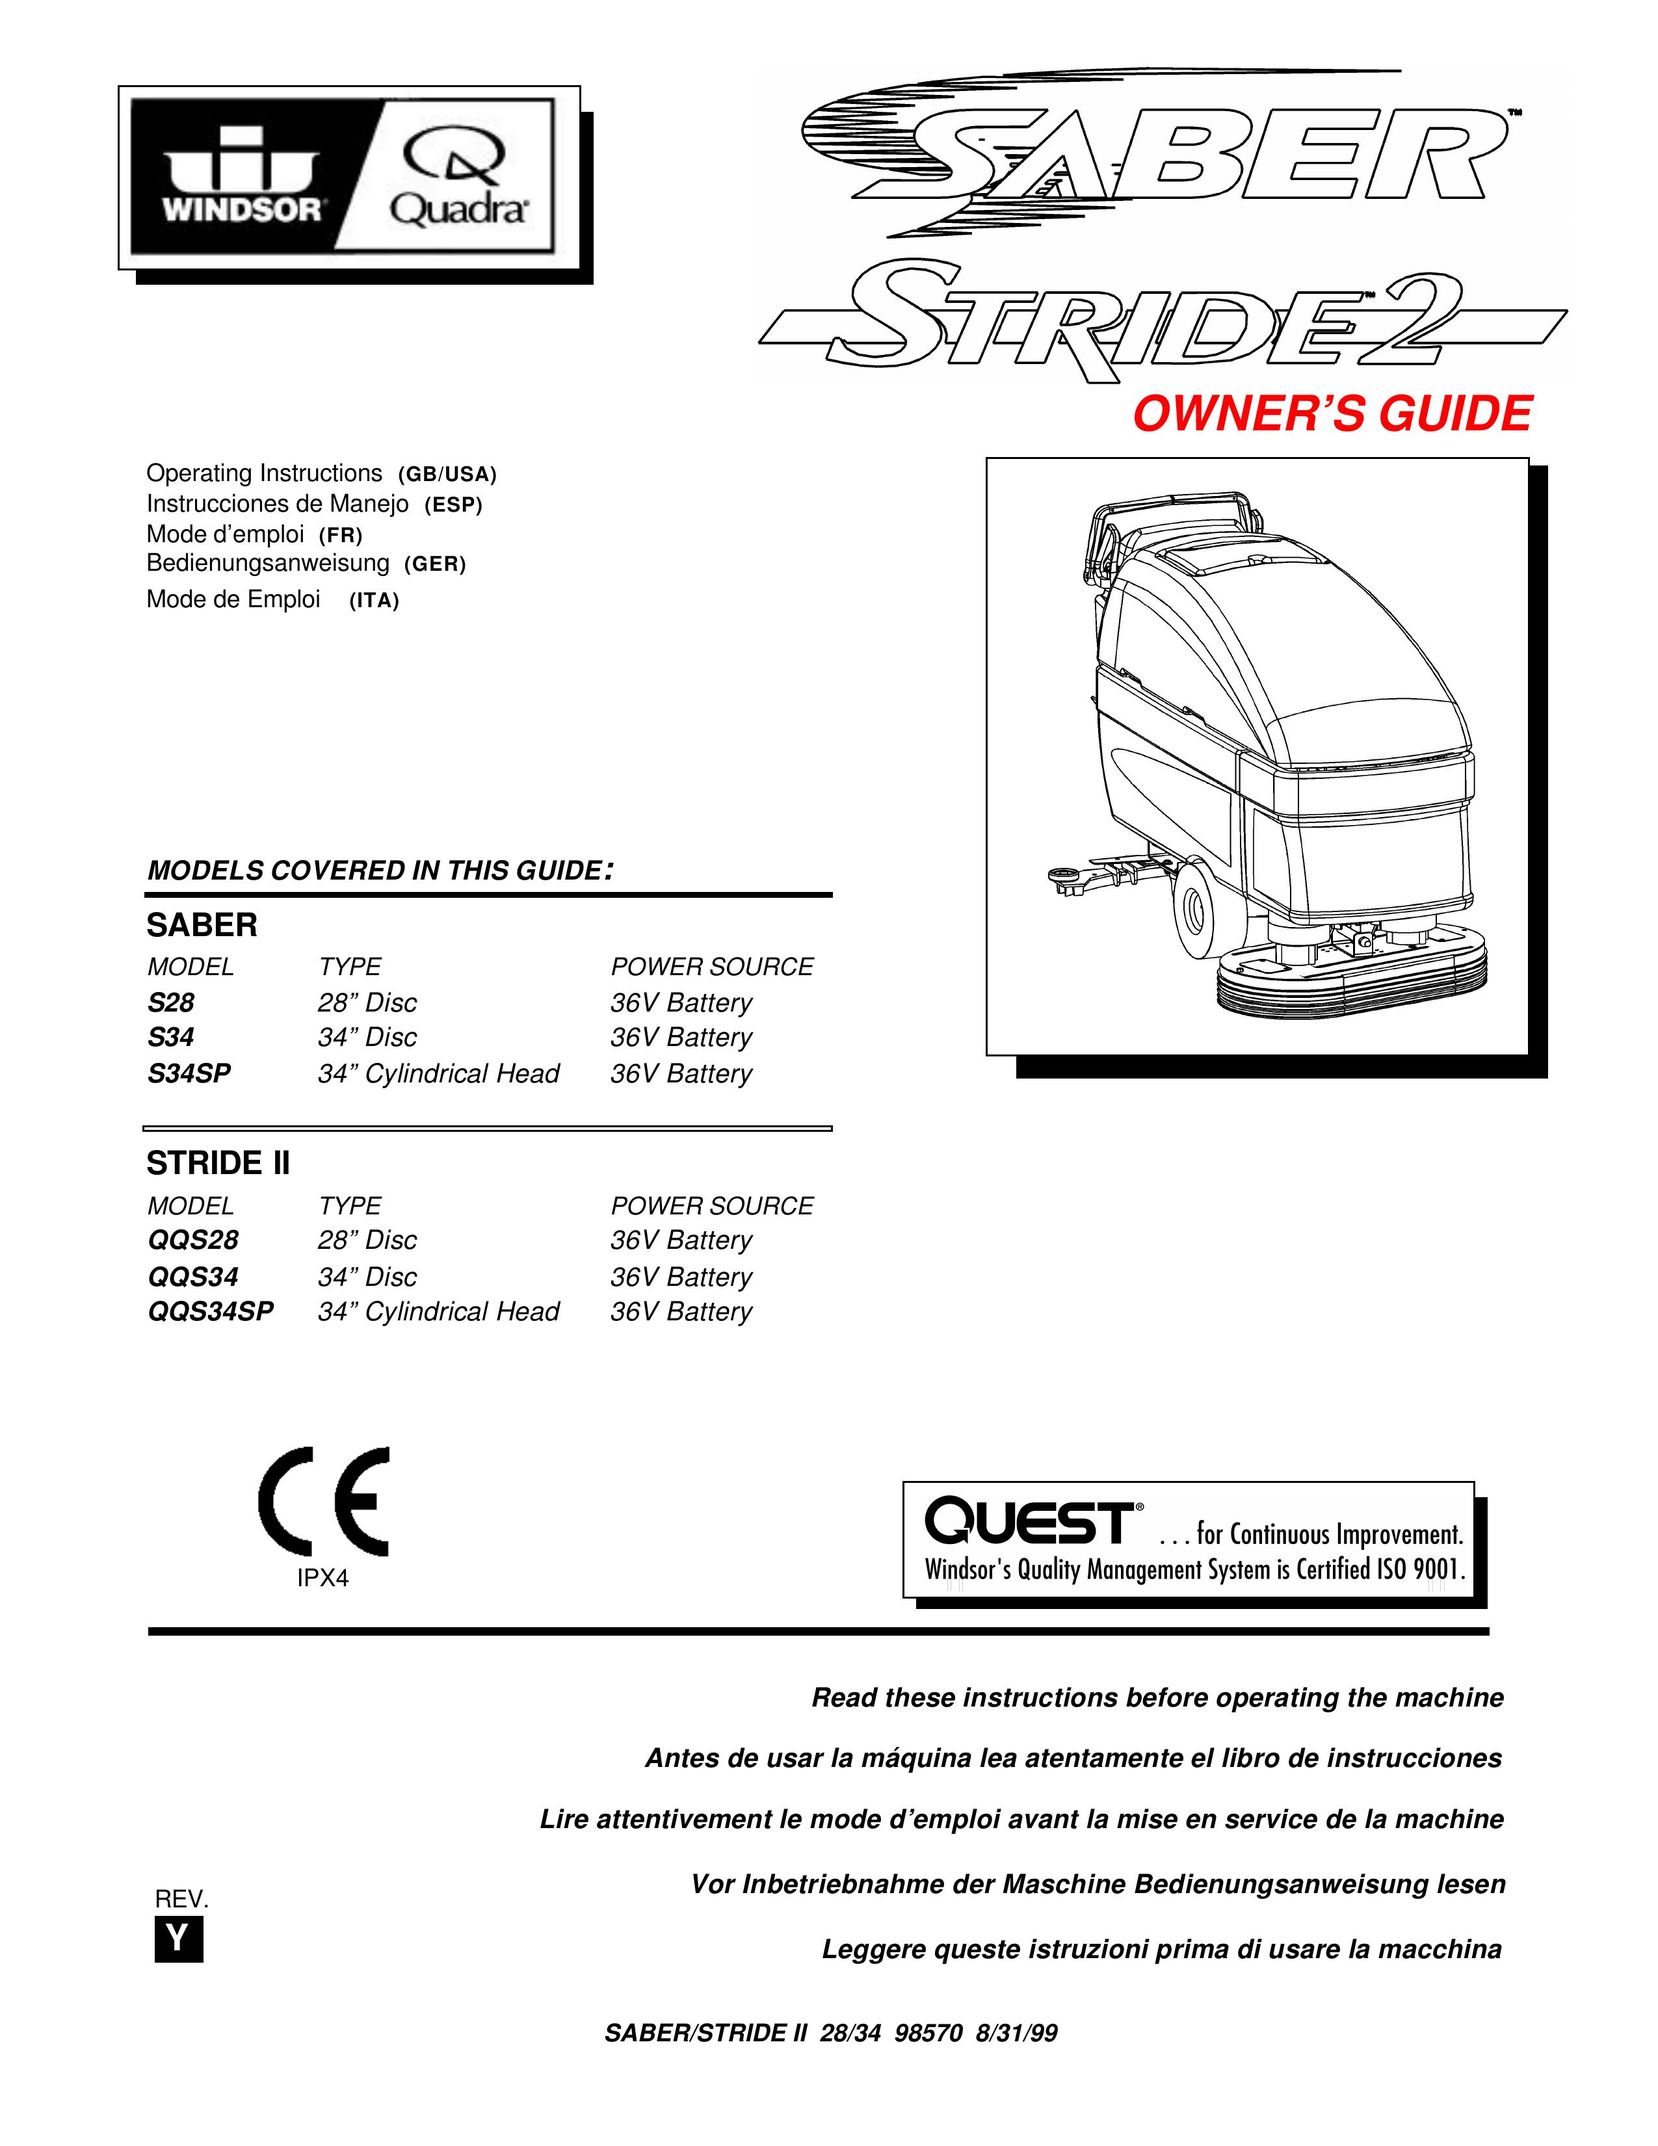 Windsor QQS28 Sander User Manual